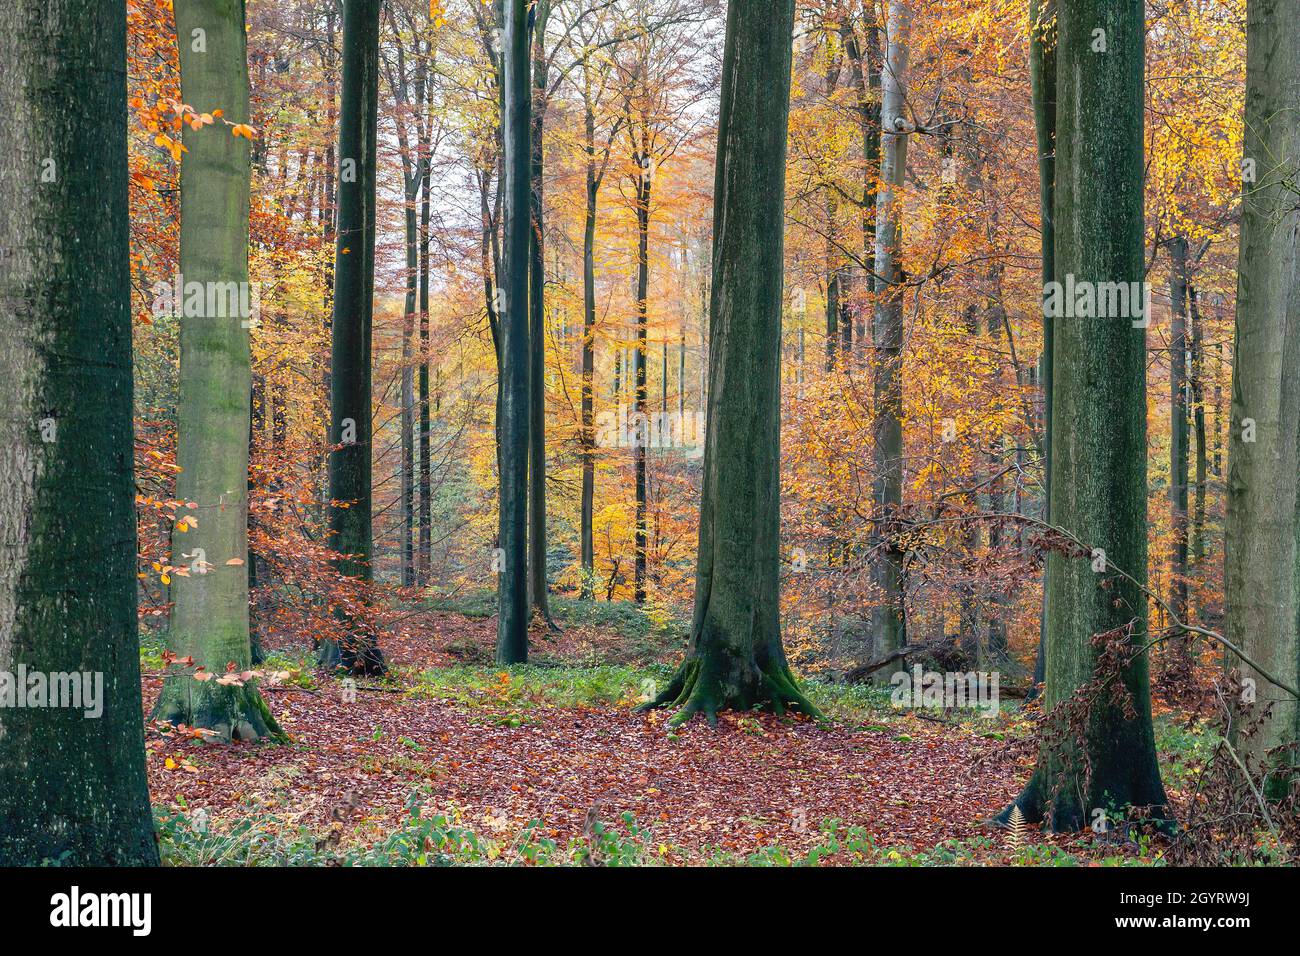 Forêt de hêtres anciens (Fagus sylvatica) avec feuillage décidus coloré en automne Banque D'Images